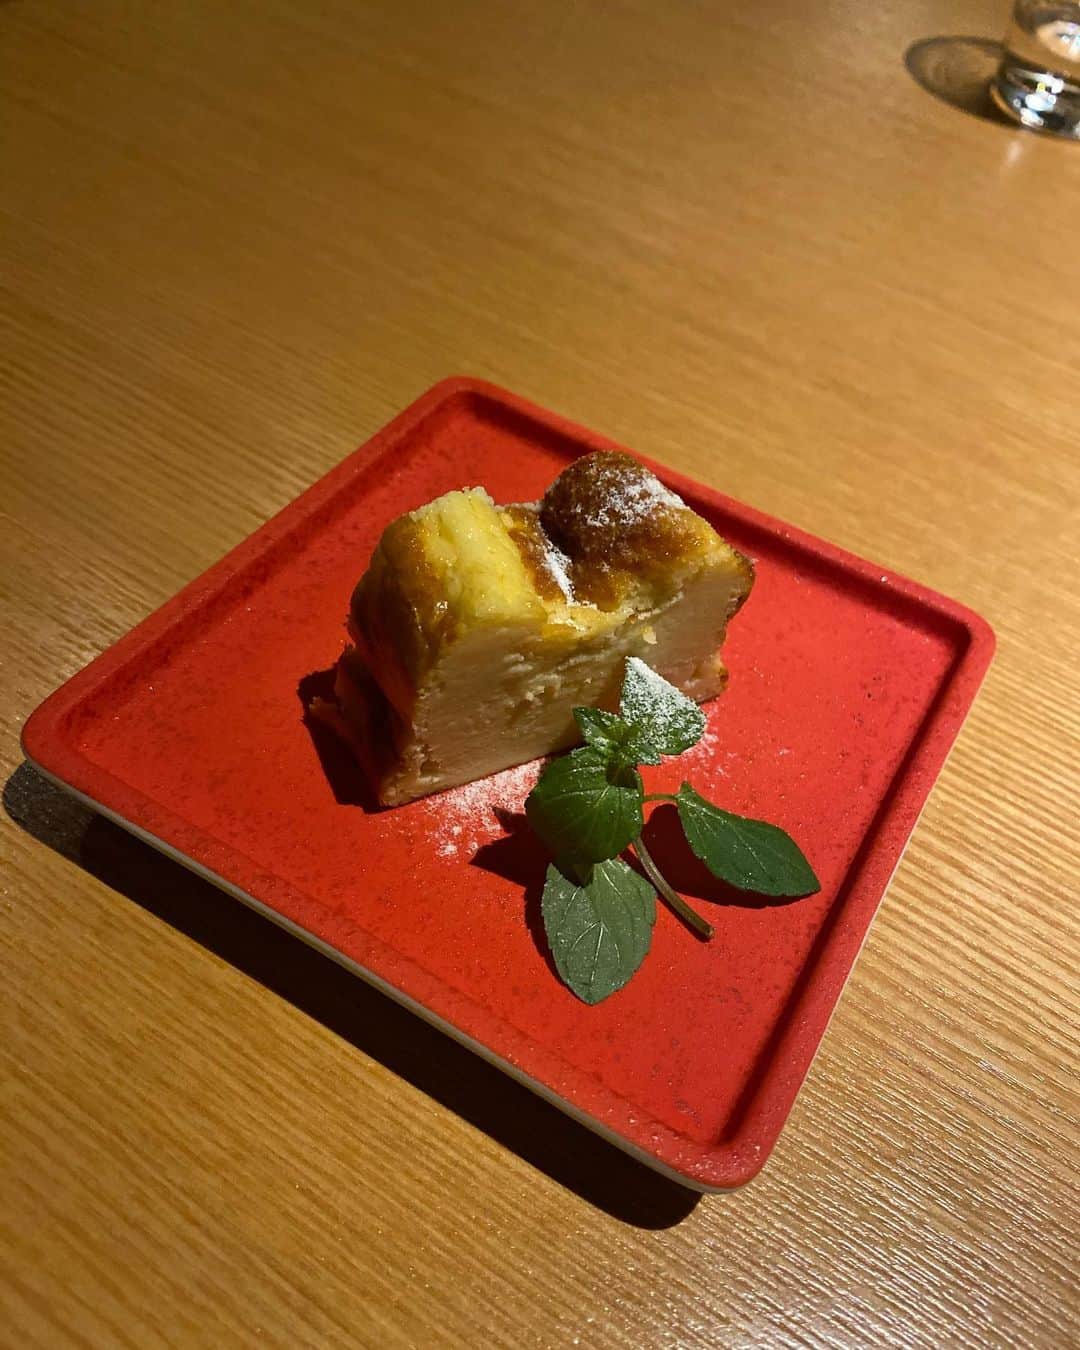 森下愛里沙(もりしたありさ) さんのインスタグラム写真 - (森下愛里沙(もりしたありさ) Instagram)「ㅤㅤㅤㅤㅤㅤㅤㅤㅤㅤㅤㅤㅤ ㅤㅤㅤㅤㅤㅤㅤㅤㅤㅤㅤㅤㅤ ㅤㅤㅤㅤㅤㅤㅤㅤㅤㅤㅤㅤㅤ ㅤㅤㅤㅤㅤㅤㅤㅤㅤㅤㅤㅤㅤ @ezomaeda さんのディナー🍽 ㅤㅤㅤㅤㅤㅤㅤㅤㅤㅤㅤㅤㅤ ㅤㅤㅤㅤㅤㅤㅤㅤㅤㅤㅤㅤㅤ 季節の厳選素材コースを頂きました！ ㅤㅤㅤㅤㅤㅤㅤㅤㅤㅤㅤㅤㅤ ㅤㅤㅤㅤㅤㅤㅤㅤㅤㅤㅤㅤㅤ ㅤㅤㅤㅤㅤㅤㅤㅤㅤㅤㅤㅤㅤ ㅤㅤㅤㅤㅤㅤㅤㅤㅤㅤㅤㅤㅤ 北海道の新鮮な野菜やお肉、 海鮮を使ったコースでとても美味しかったです。 ㅤㅤㅤㅤㅤㅤㅤㅤㅤㅤㅤㅤㅤ 私はこの時初めて鹿肉をいただいたの ですが美味しすぎて初め鹿肉だと気付きませんでした🥺 ㅤㅤㅤㅤㅤㅤㅤㅤㅤㅤㅤㅤㅤ このお店のおかげで鹿肉が好きになりました🦌💕 ㅤㅤㅤㅤㅤㅤㅤㅤㅤㅤㅤㅤㅤ ㅤㅤㅤㅤㅤㅤㅤㅤㅤㅤㅤㅤㅤ シェフの前田さんもスタッフさんもとても面白い方で 楽しい時間を過ごす事ができました🍷 ㅤㅤㅤㅤㅤㅤㅤㅤㅤㅤㅤㅤㅤ ㅤㅤㅤㅤㅤㅤㅤㅤㅤㅤㅤㅤㅤ ㅤㅤㅤㅤㅤㅤㅤㅤㅤㅤㅤㅤㅤ ㅤㅤㅤㅤㅤㅤㅤㅤㅤㅤㅤㅤㅤ 海鮮類もお野菜もとっても新鮮で 凄く美味しかったです。 ㅤㅤㅤㅤㅤㅤㅤㅤㅤㅤㅤㅤㅤ ㅤㅤㅤㅤㅤㅤㅤㅤㅤㅤㅤㅤㅤ ㅤㅤㅤㅤㅤㅤㅤㅤㅤㅤㅤㅤㅤ ㅤㅤㅤㅤㅤㅤㅤㅤㅤㅤㅤㅤㅤ ワンピース @spicaglow  ⁣●サイトで購入した商品を1000円引きで買える クーポンがあるので良かったら使用してください🙋🏻‍♀️ ⁣→クーポンコード : arsg⁣  ㅤㅤㅤㅤㅤㅤㅤㅤㅤㅤㅤㅤㅤ ㅤㅤㅤㅤㅤㅤㅤㅤㅤㅤㅤㅤㅤ ㅤㅤㅤㅤㅤㅤㅤㅤㅤㅤㅤㅤㅤ ㅤㅤㅤㅤㅤㅤㅤㅤㅤㅤㅤㅤㅤ ㅤㅤㅤㅤㅤㅤㅤㅤㅤㅤㅤㅤㅤ #EZO #赤坂フレンチ #赤坂ezo #隠れ家 #赤坂旬の素材 #赤坂ワイン #赤坂デート #pr #コラボベース #spicaglow⁣ #spicaglowstyle⁣ #ファッション #ワンピースコーデ #ワンピース #韓国ファッション #今日のコーデ #l4l #like4likes #ootd #instagood #outfit #instalike #fashion #팔로미 #팔로우미」7月24日 20時48分 - mini.ari